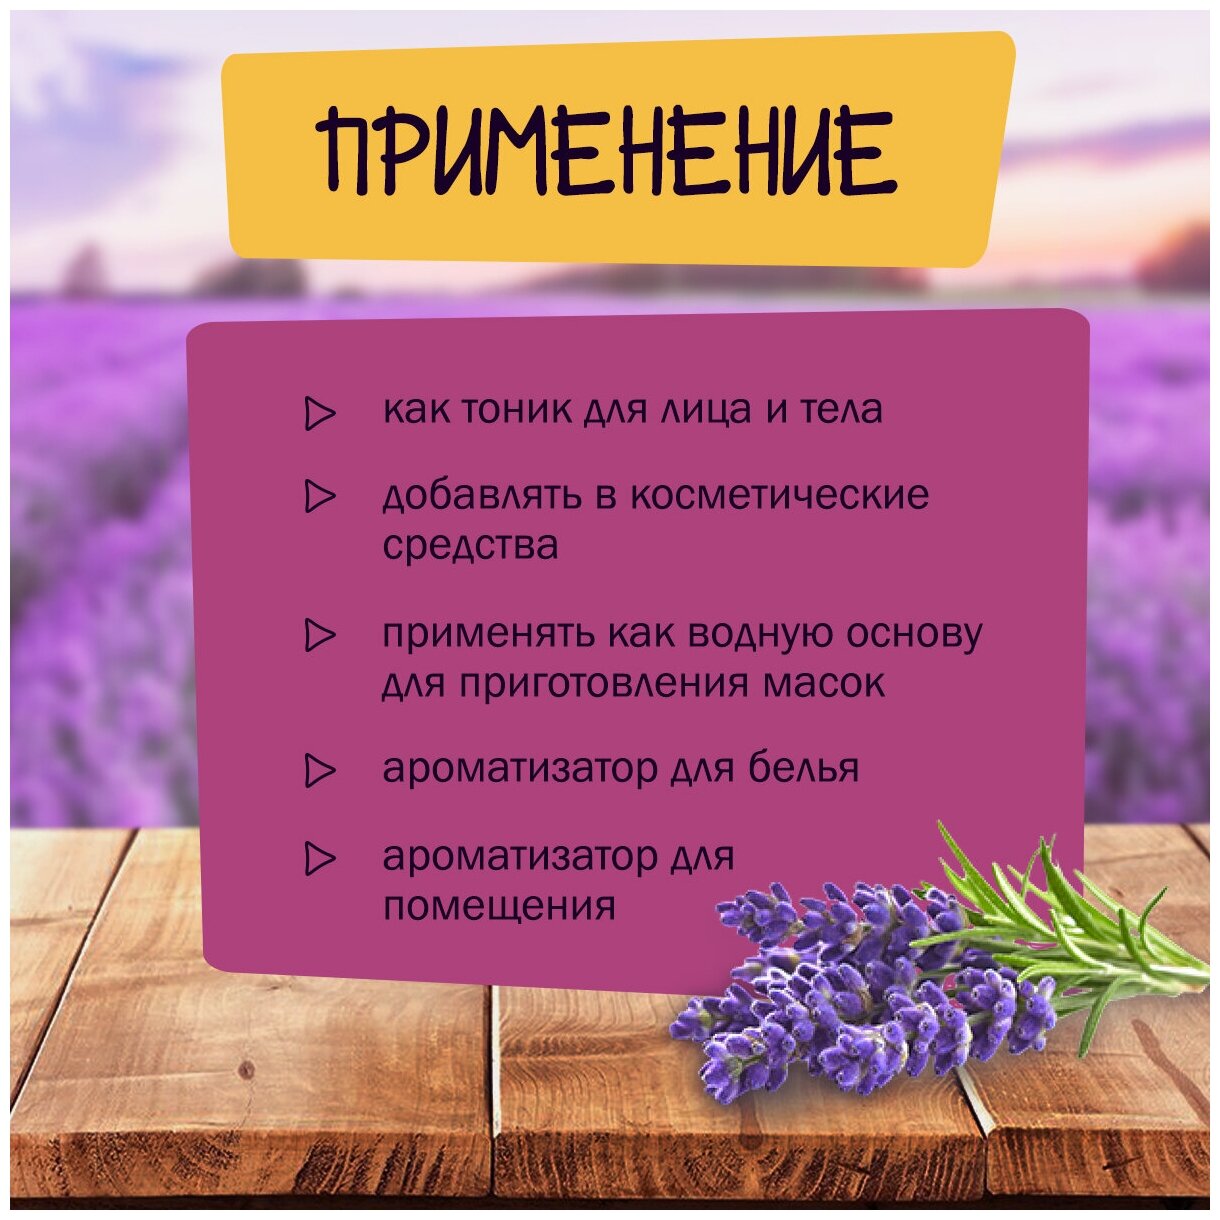 Гидролат для лица из лаванды крымской для волос для тела цветочная вода 100 мл